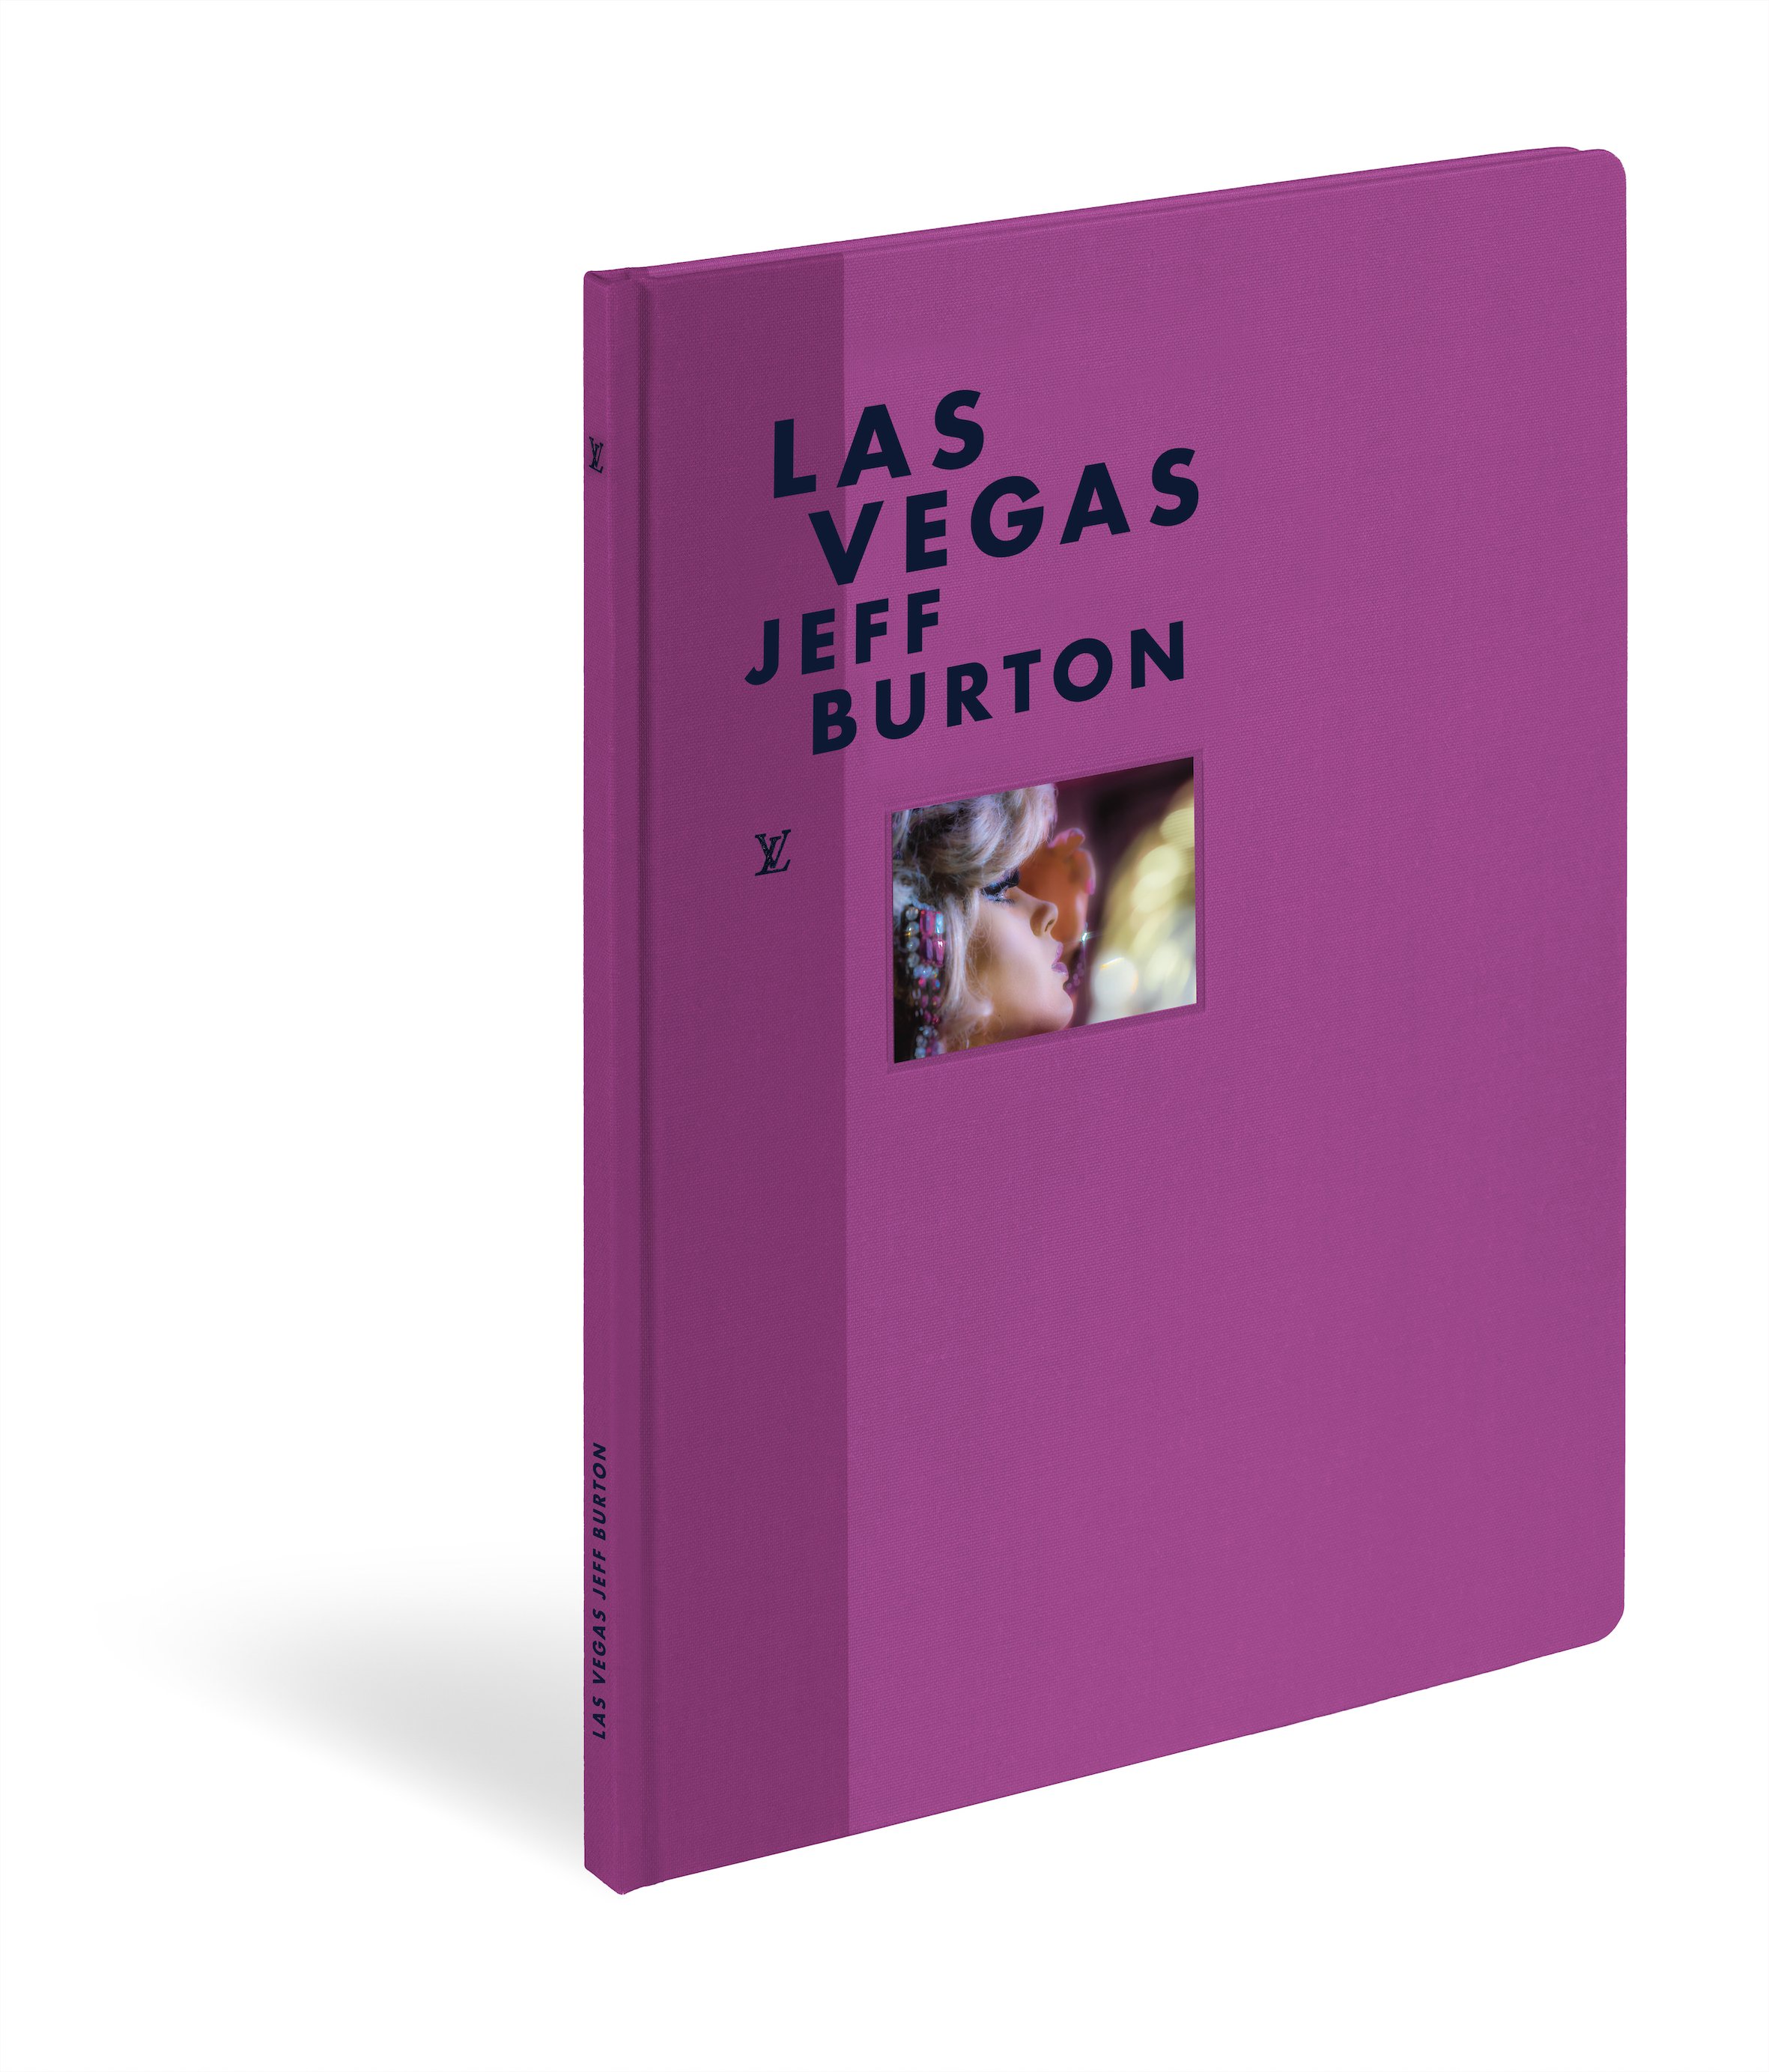 Louis Vuitton : Fashion Eye books on Buenos Aires and Las Vegas